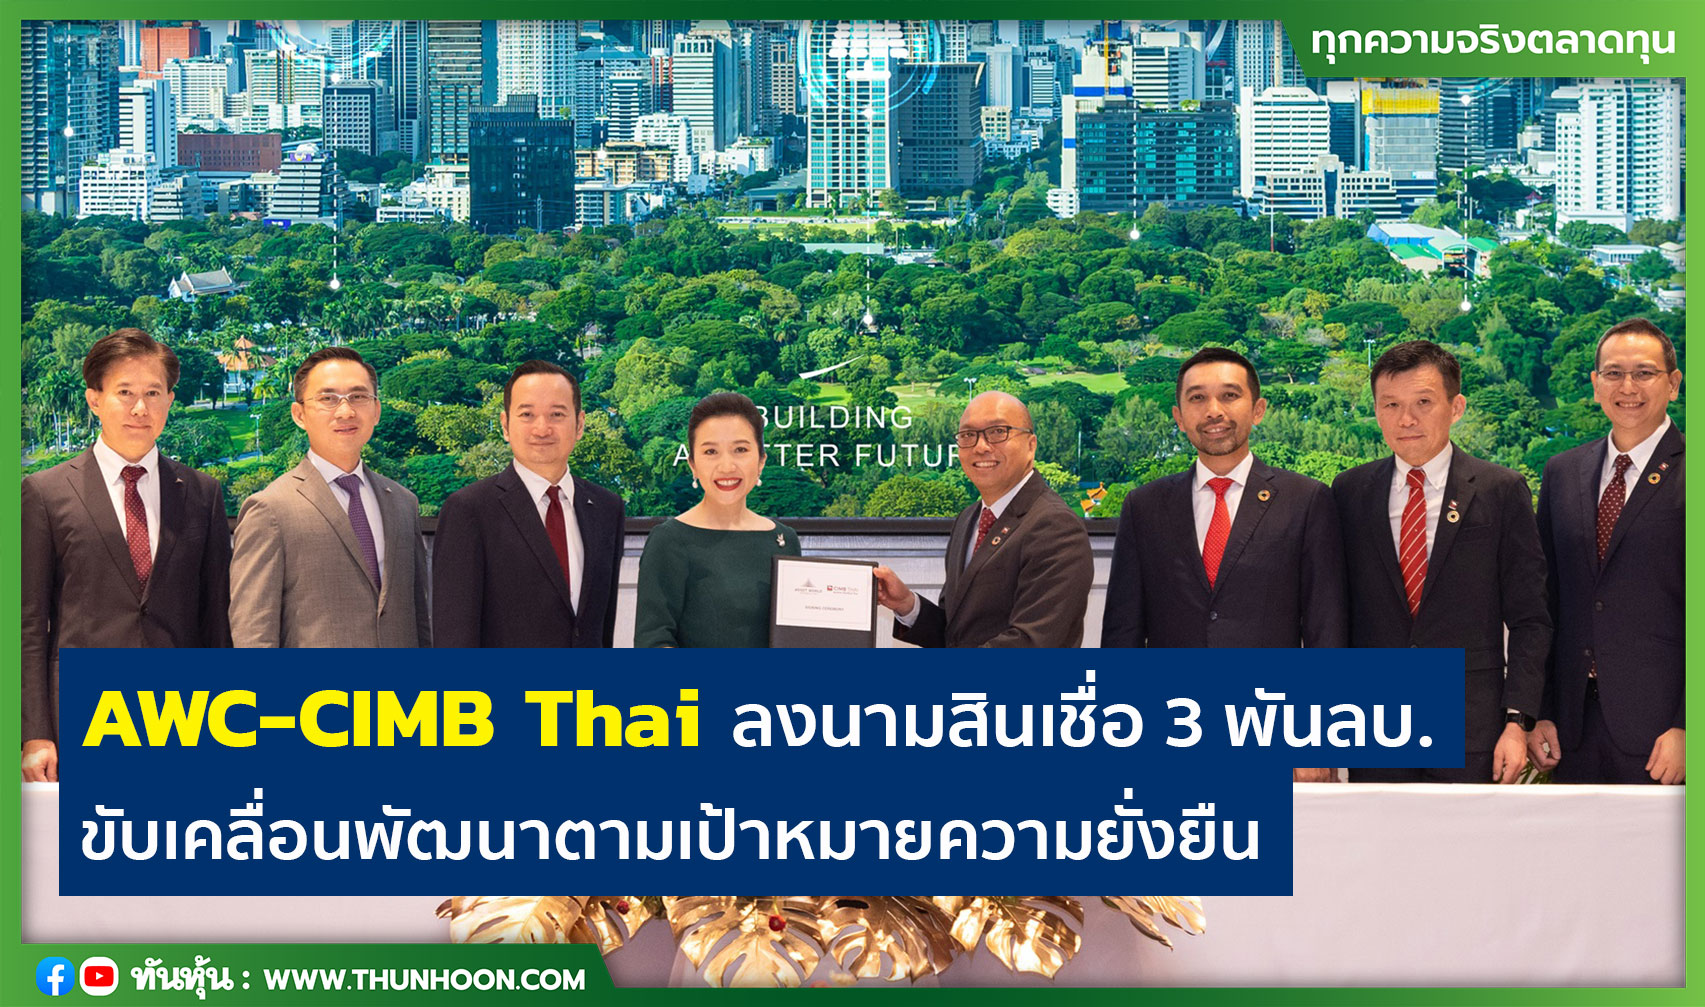 AWC-CIMB Thai ลงนามสินเชื่อ 3 พันลบ. ขับเคลื่อนพัฒนาตามเป้าหมายความยั่งยืน